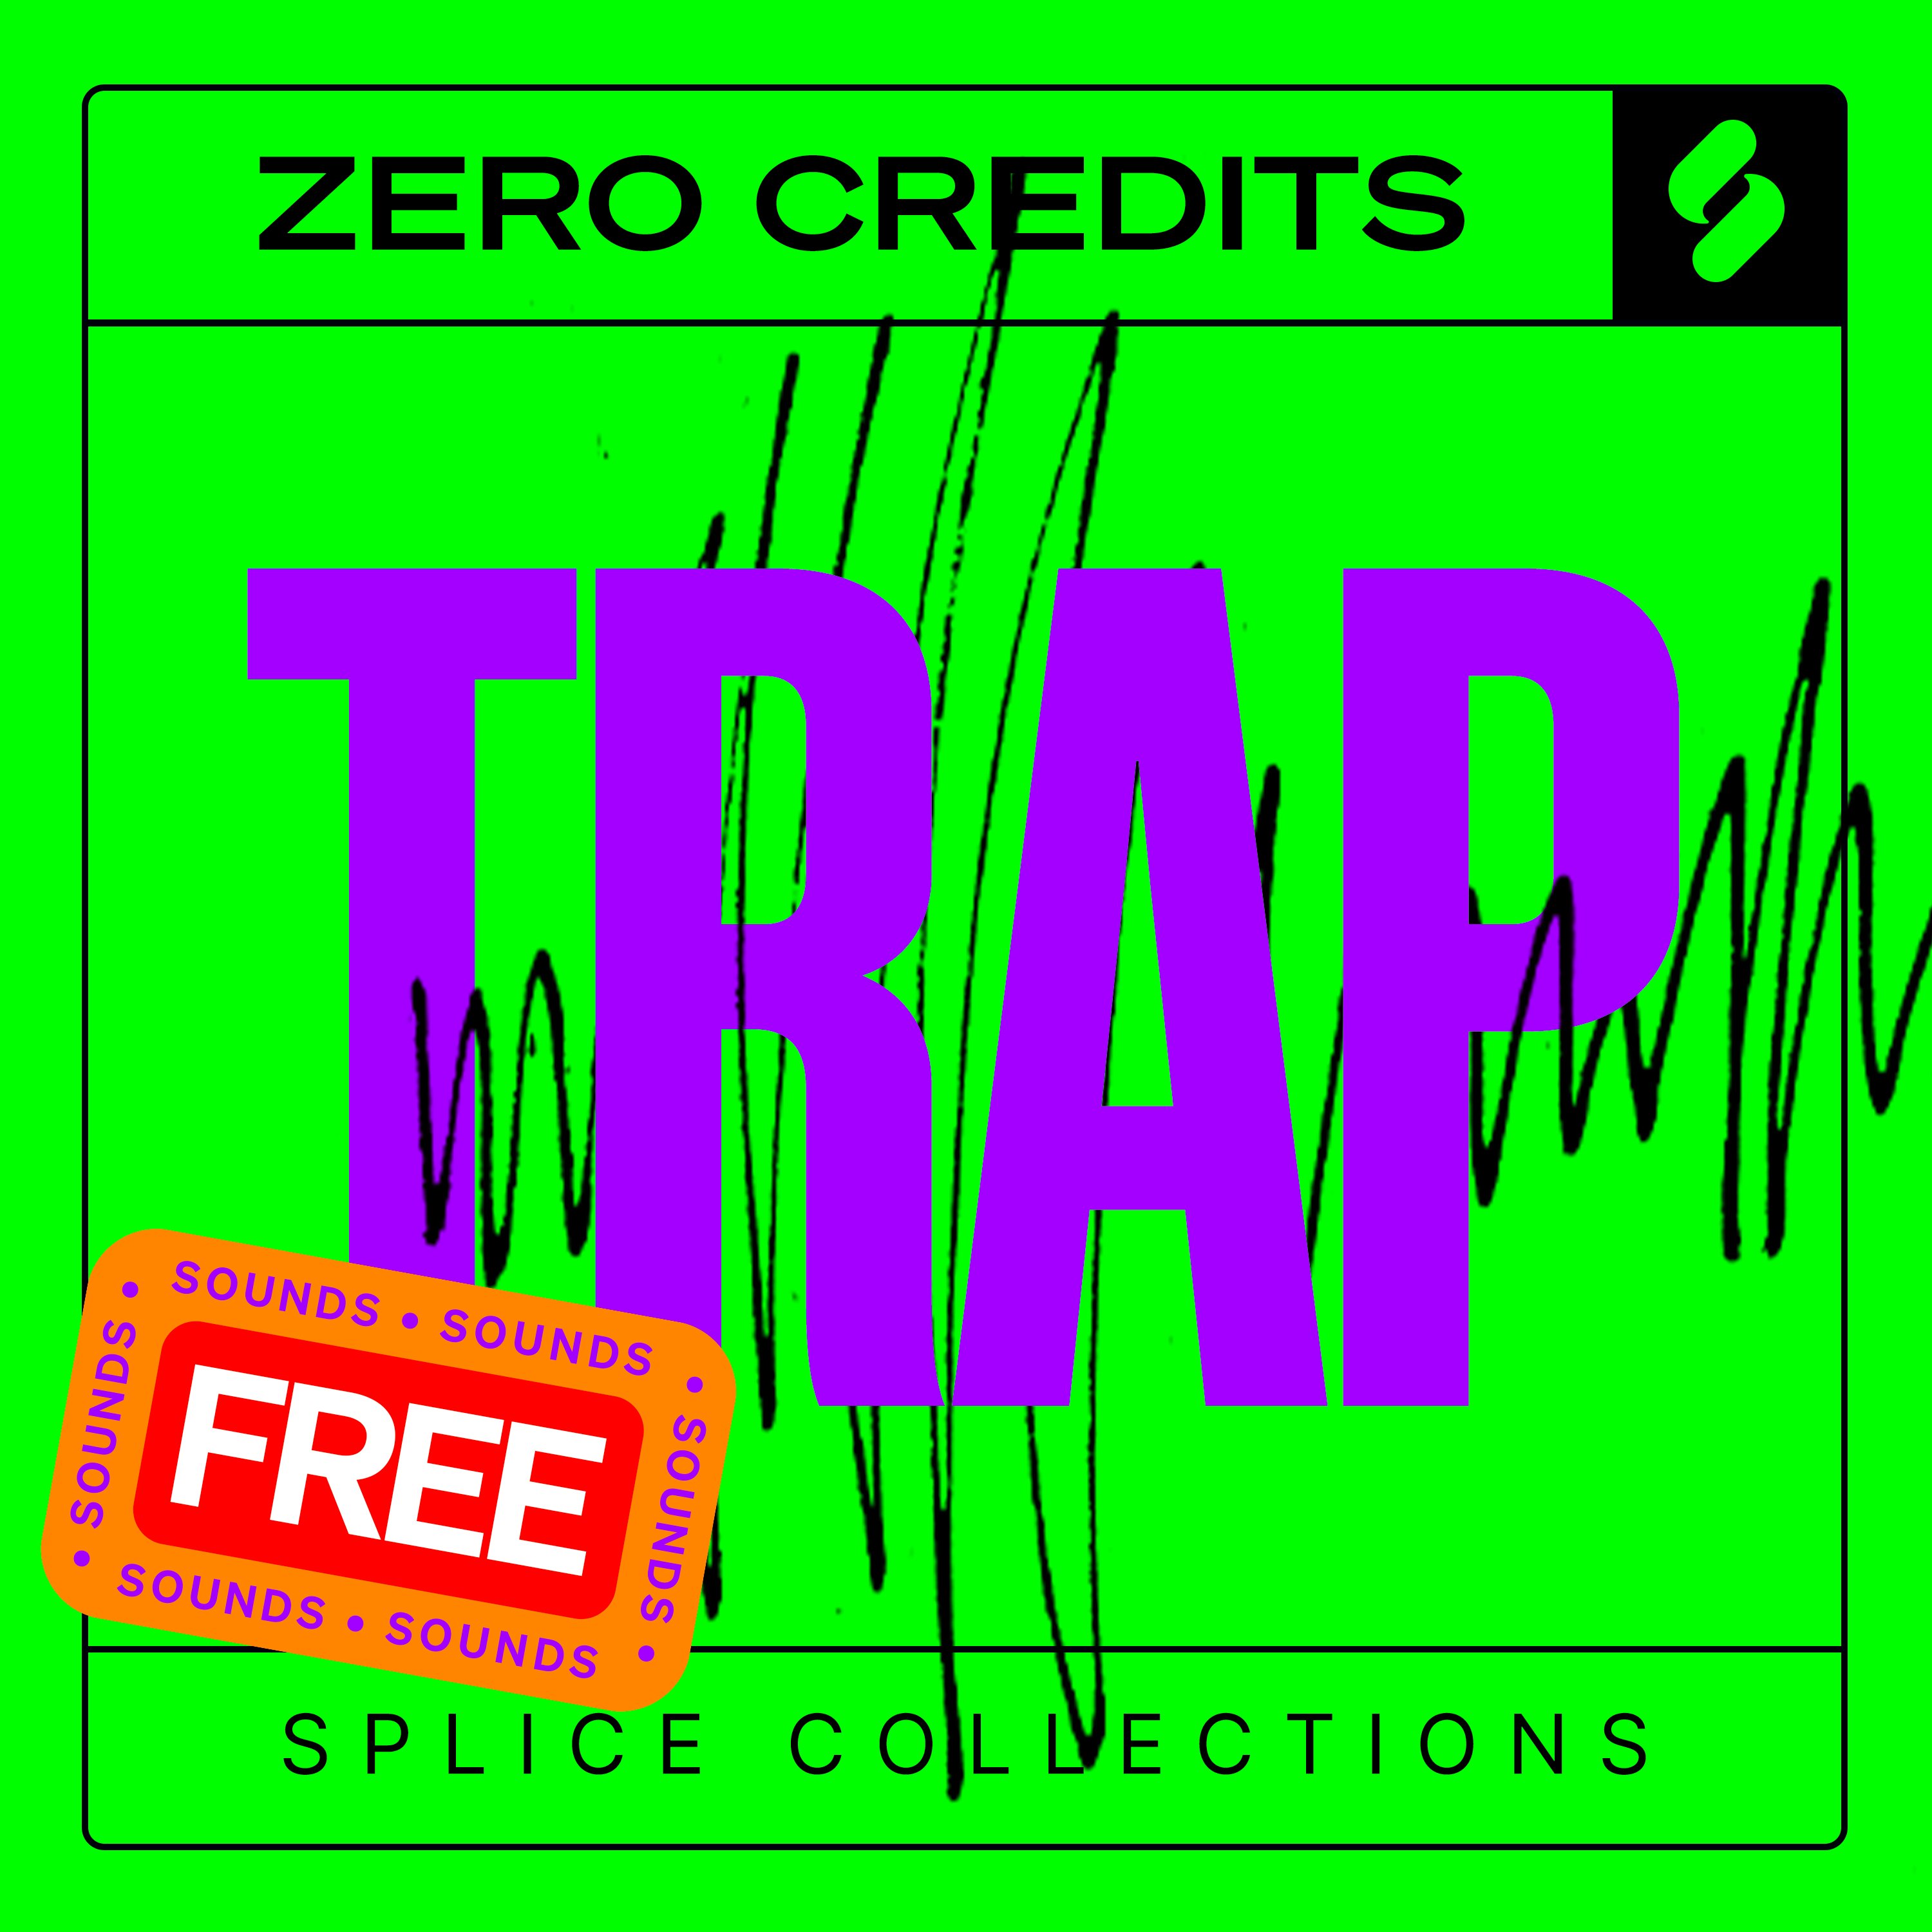 Free sounds: Trap